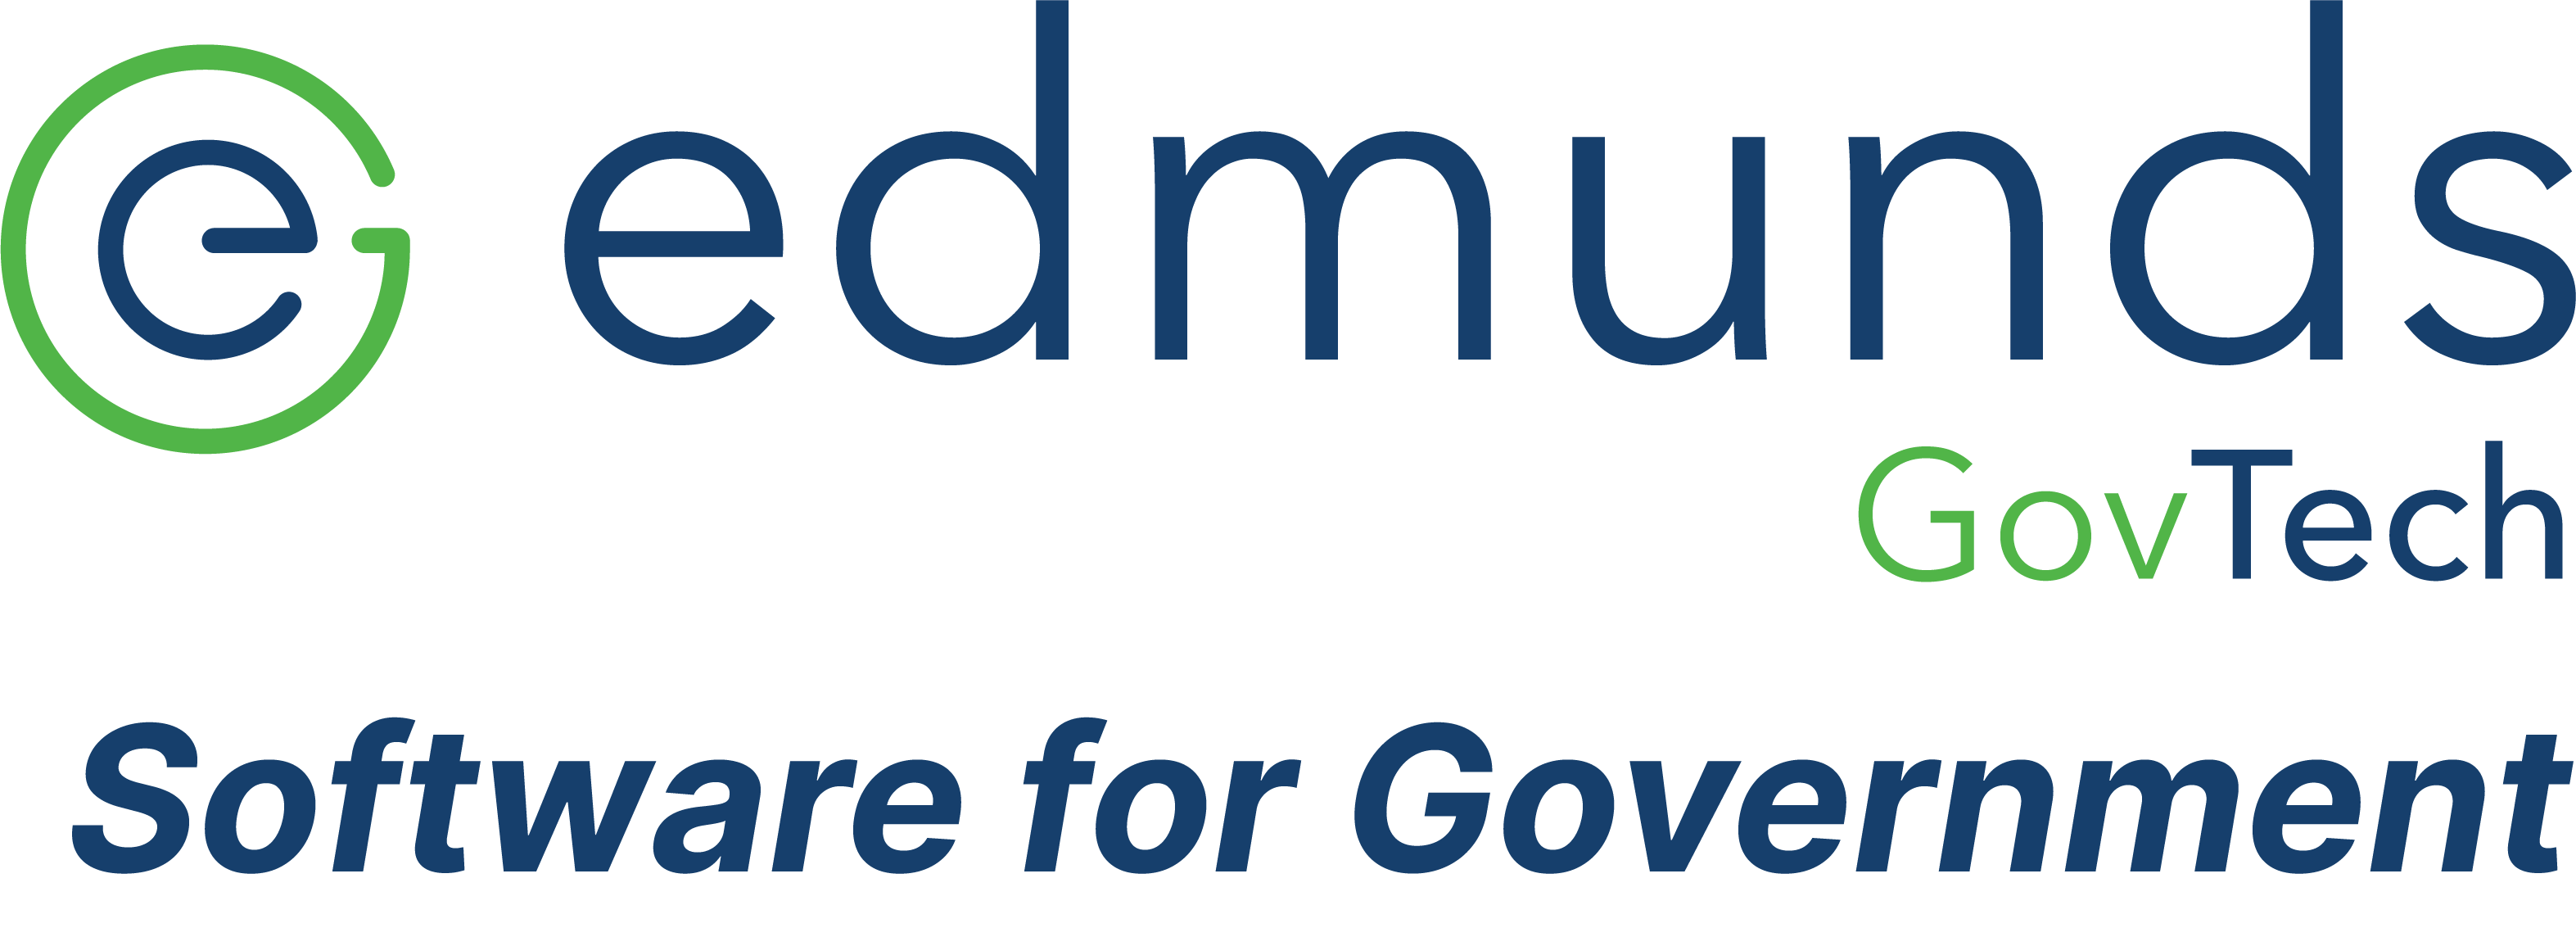 edmunds GovTech logo